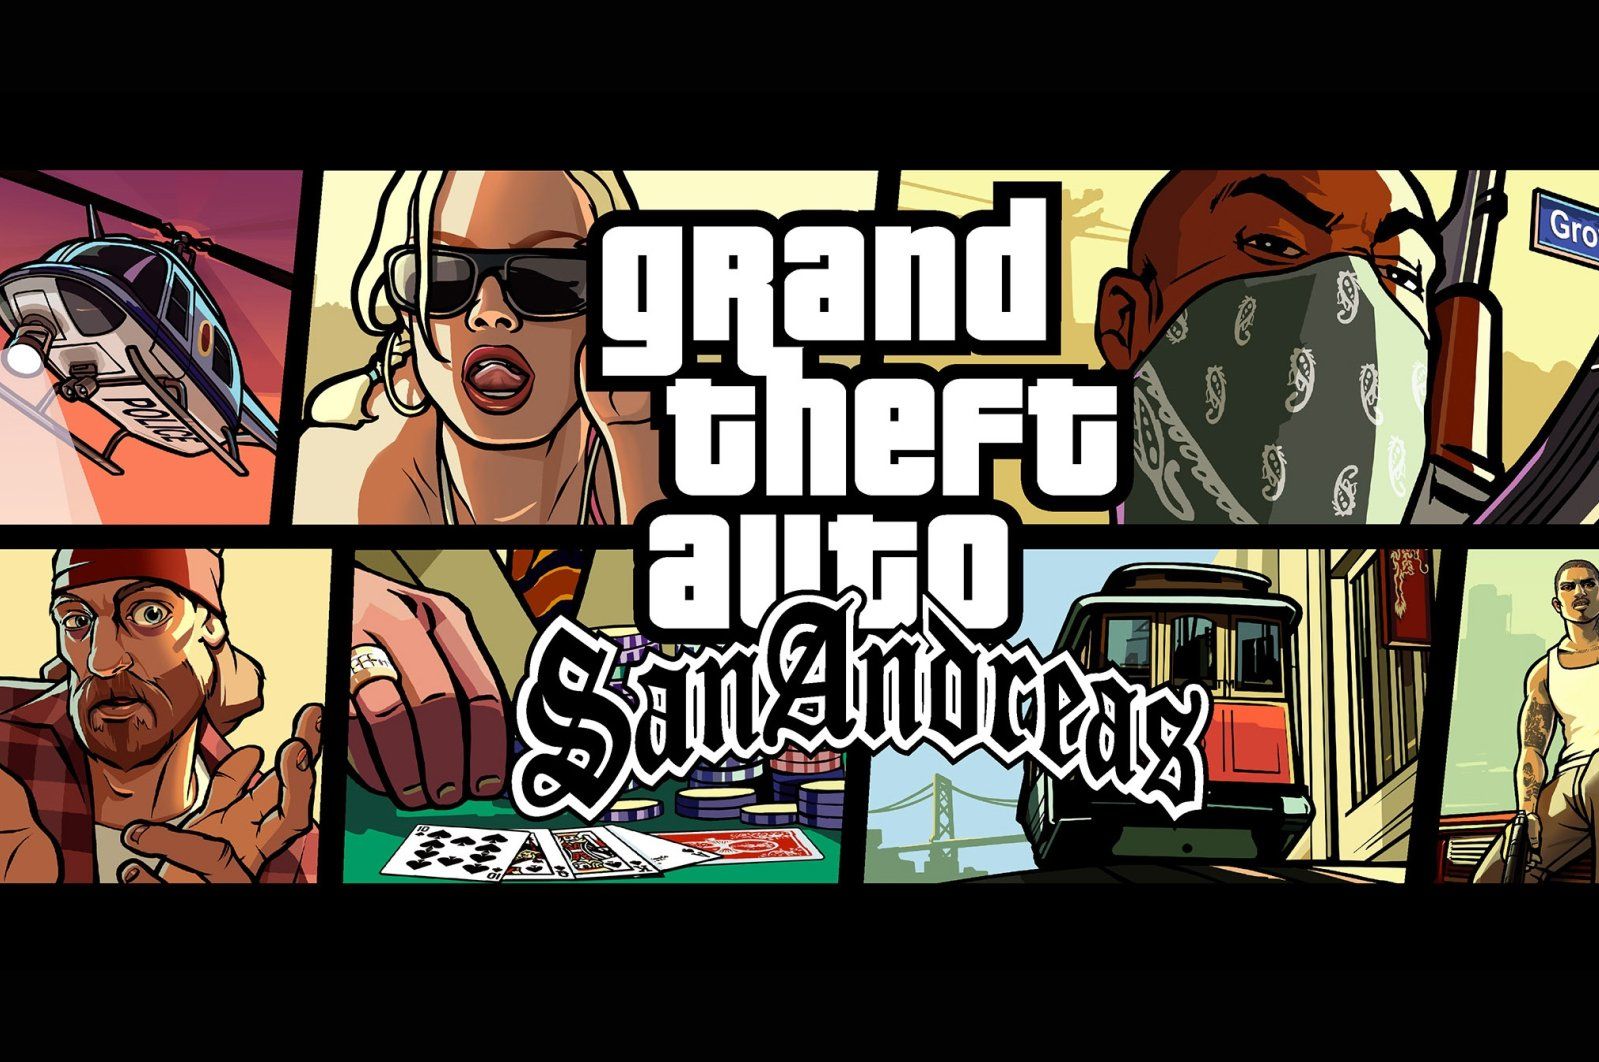 Gta San Andreas Game Legendaris Yang Masih Dimainkan Banyak Gamer Sampai Sekarang Halaman 1 Kompasiana Com